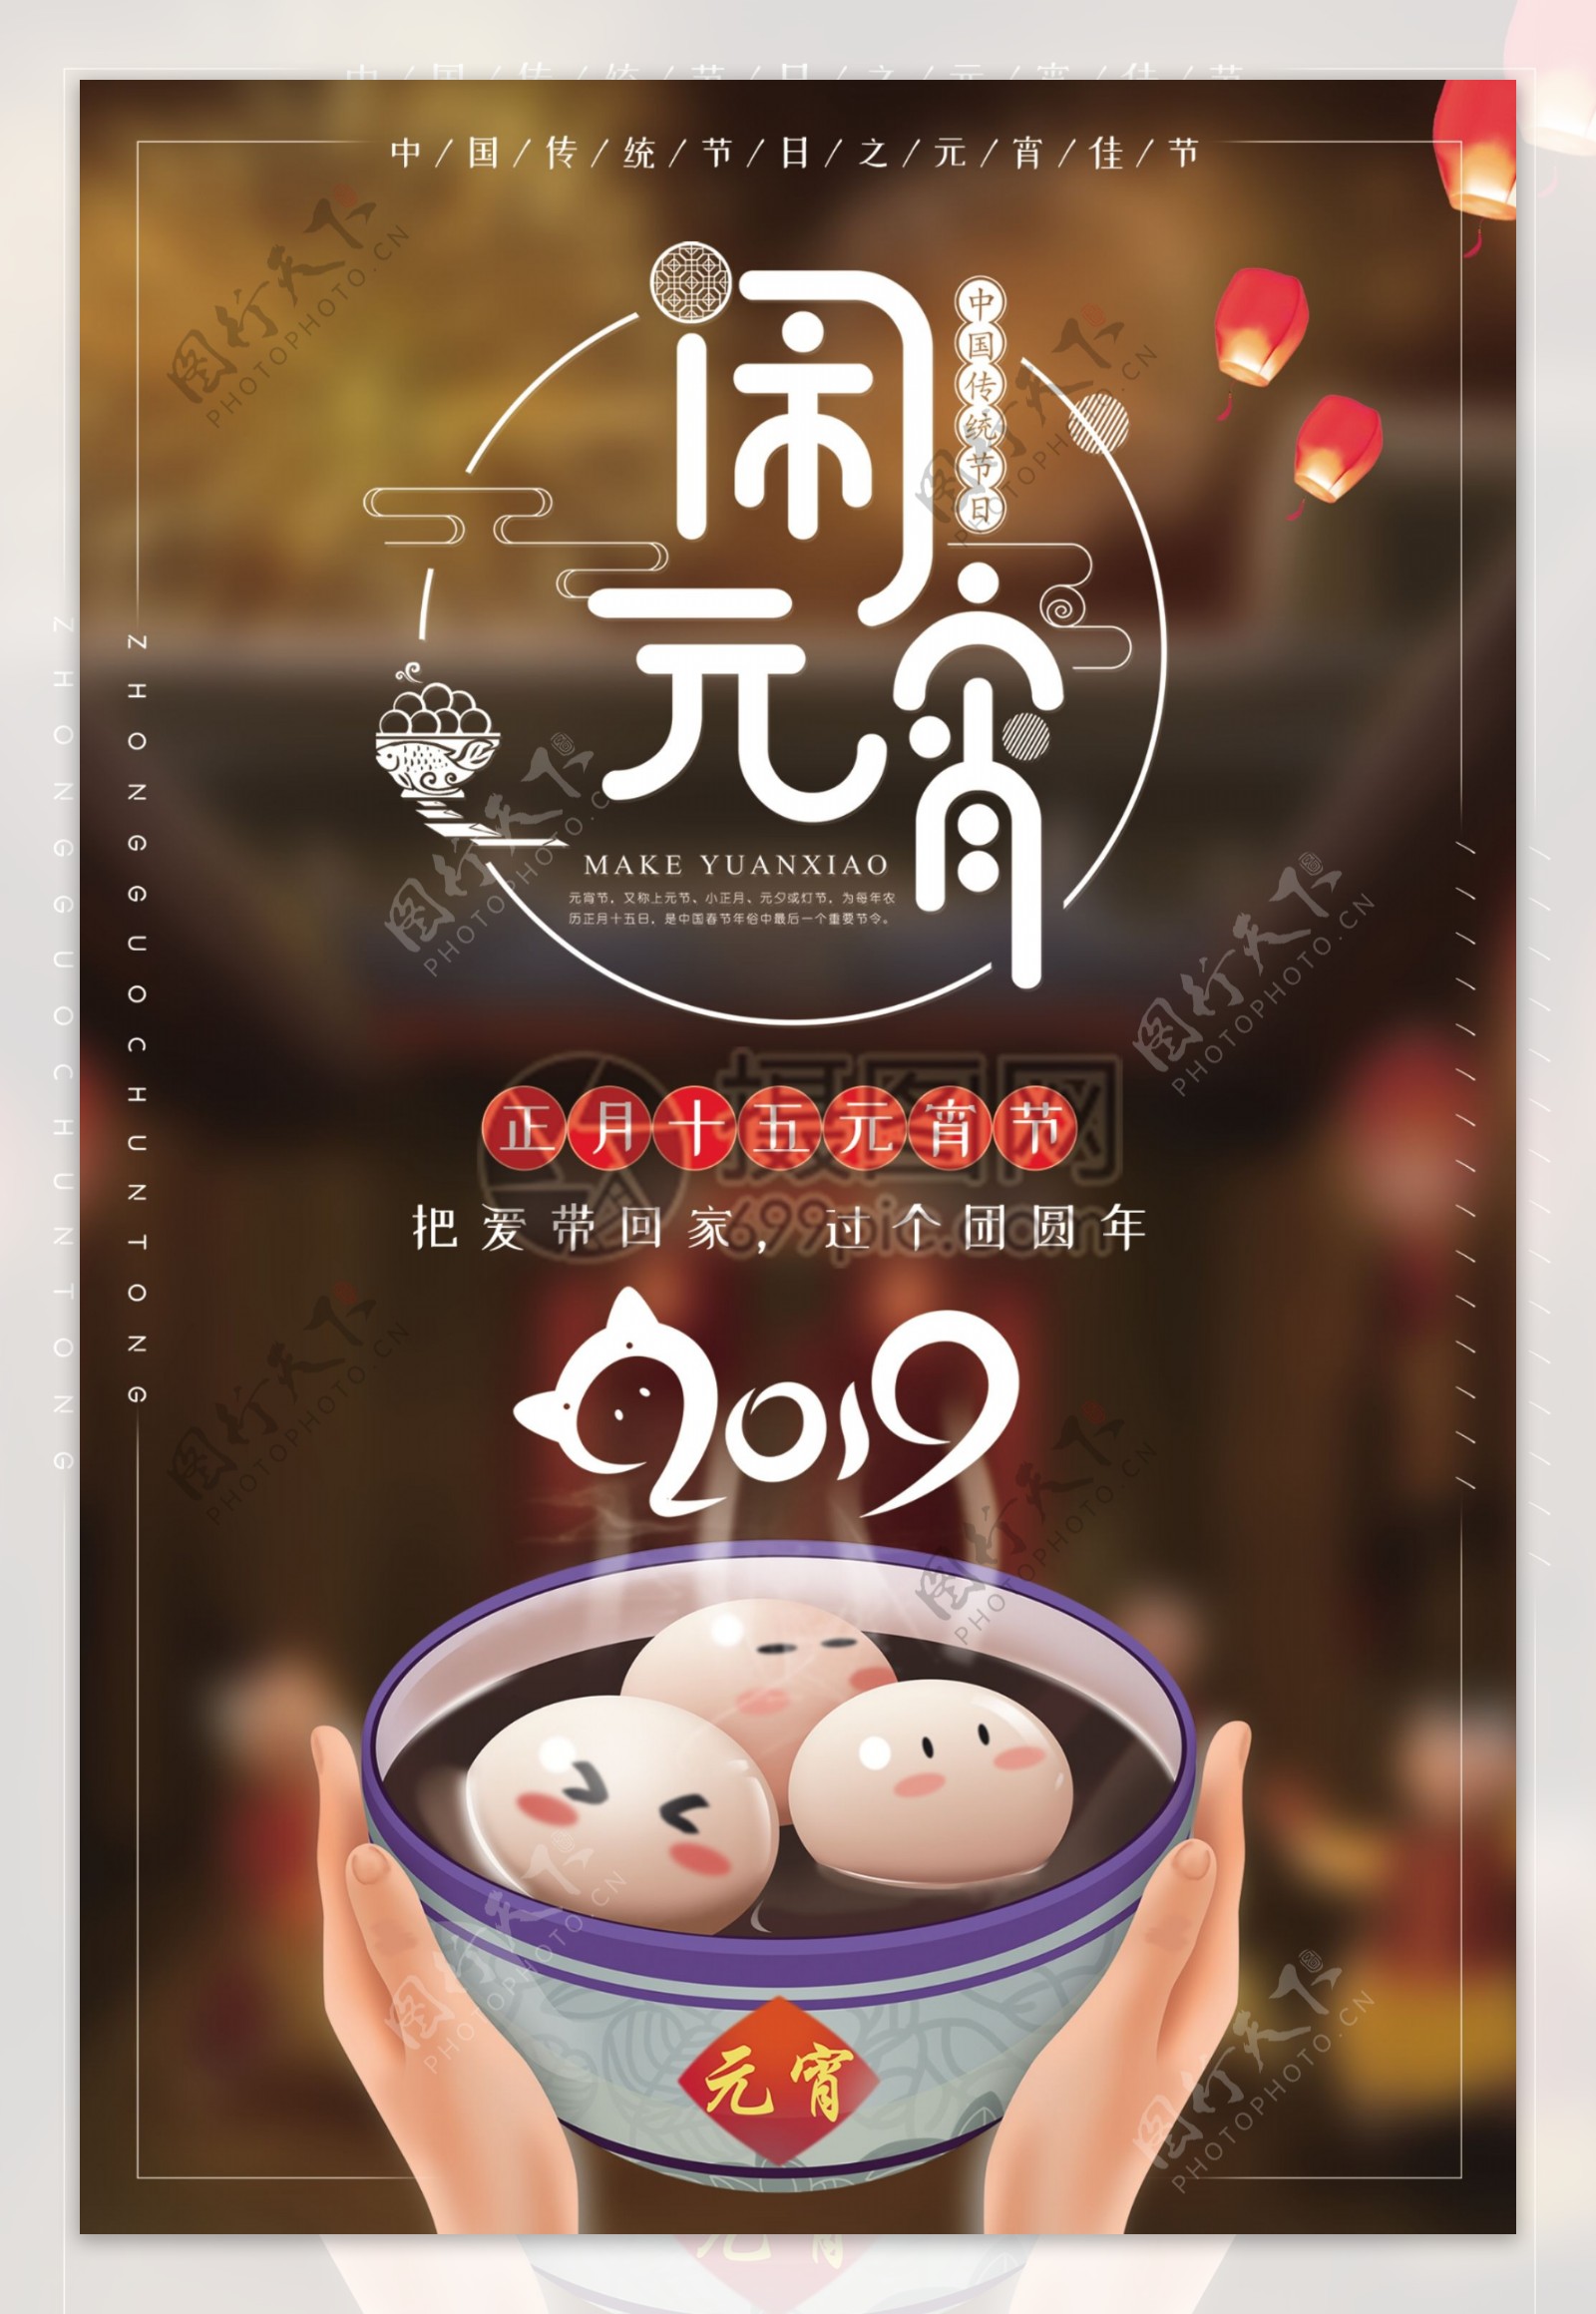 中国传统节日之元宵佳节海报